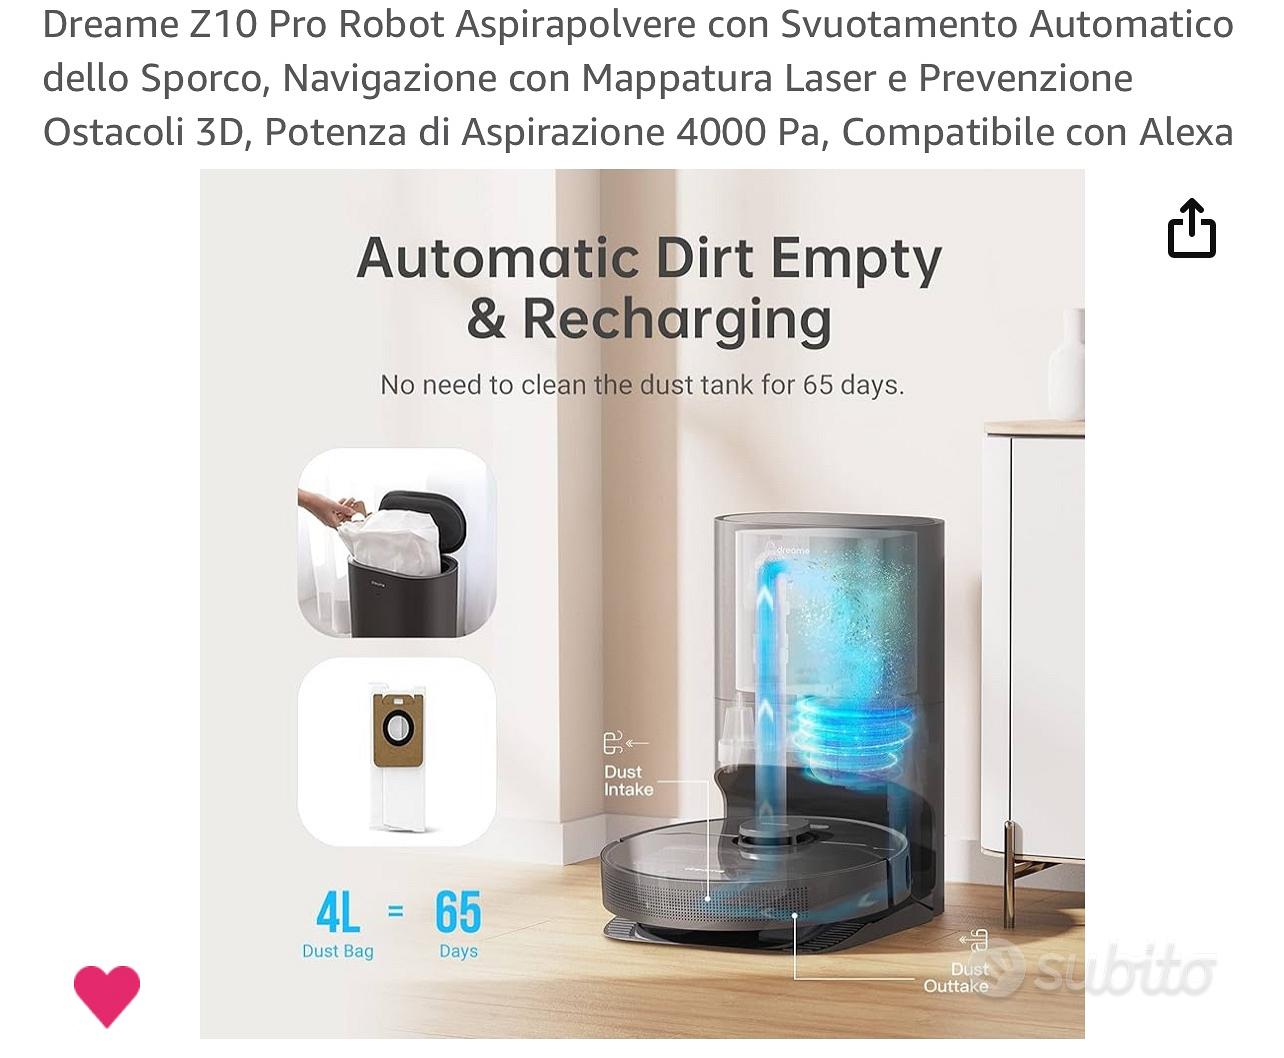 Dreame z10 Pro Robot Aspirapolvere - Elettrodomestici In vendita a